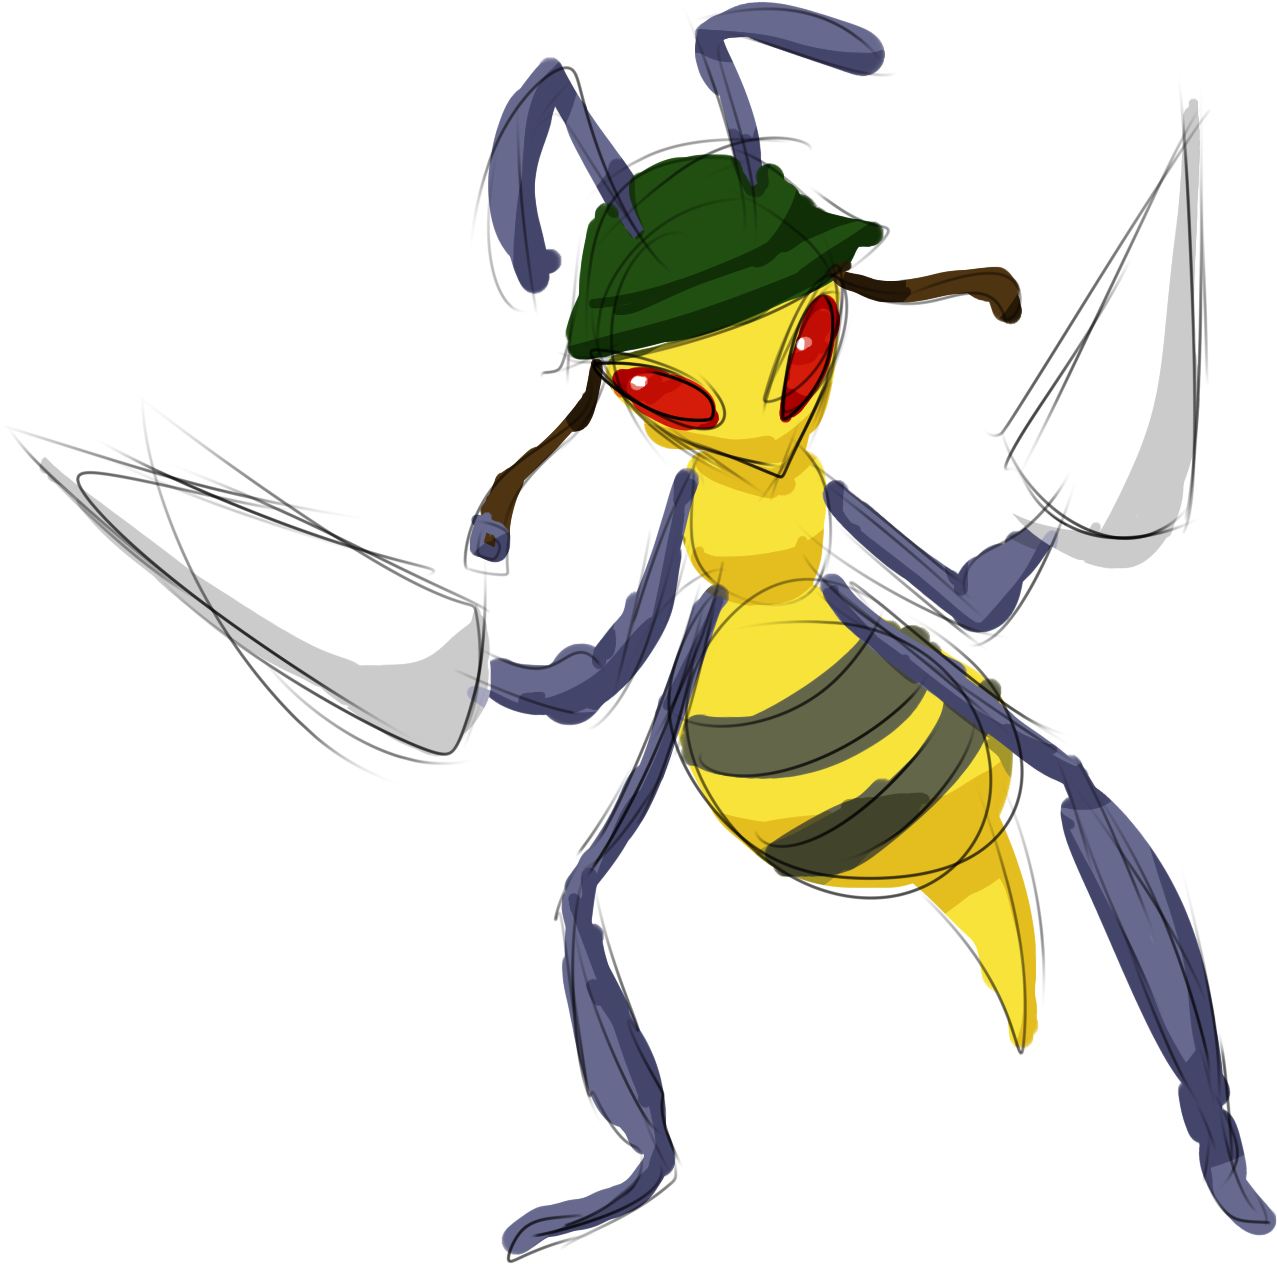 Pokémon Black 2 And White 2 Pokémon Yellow Pokémon - Portable Network Graphics (1600x1500)